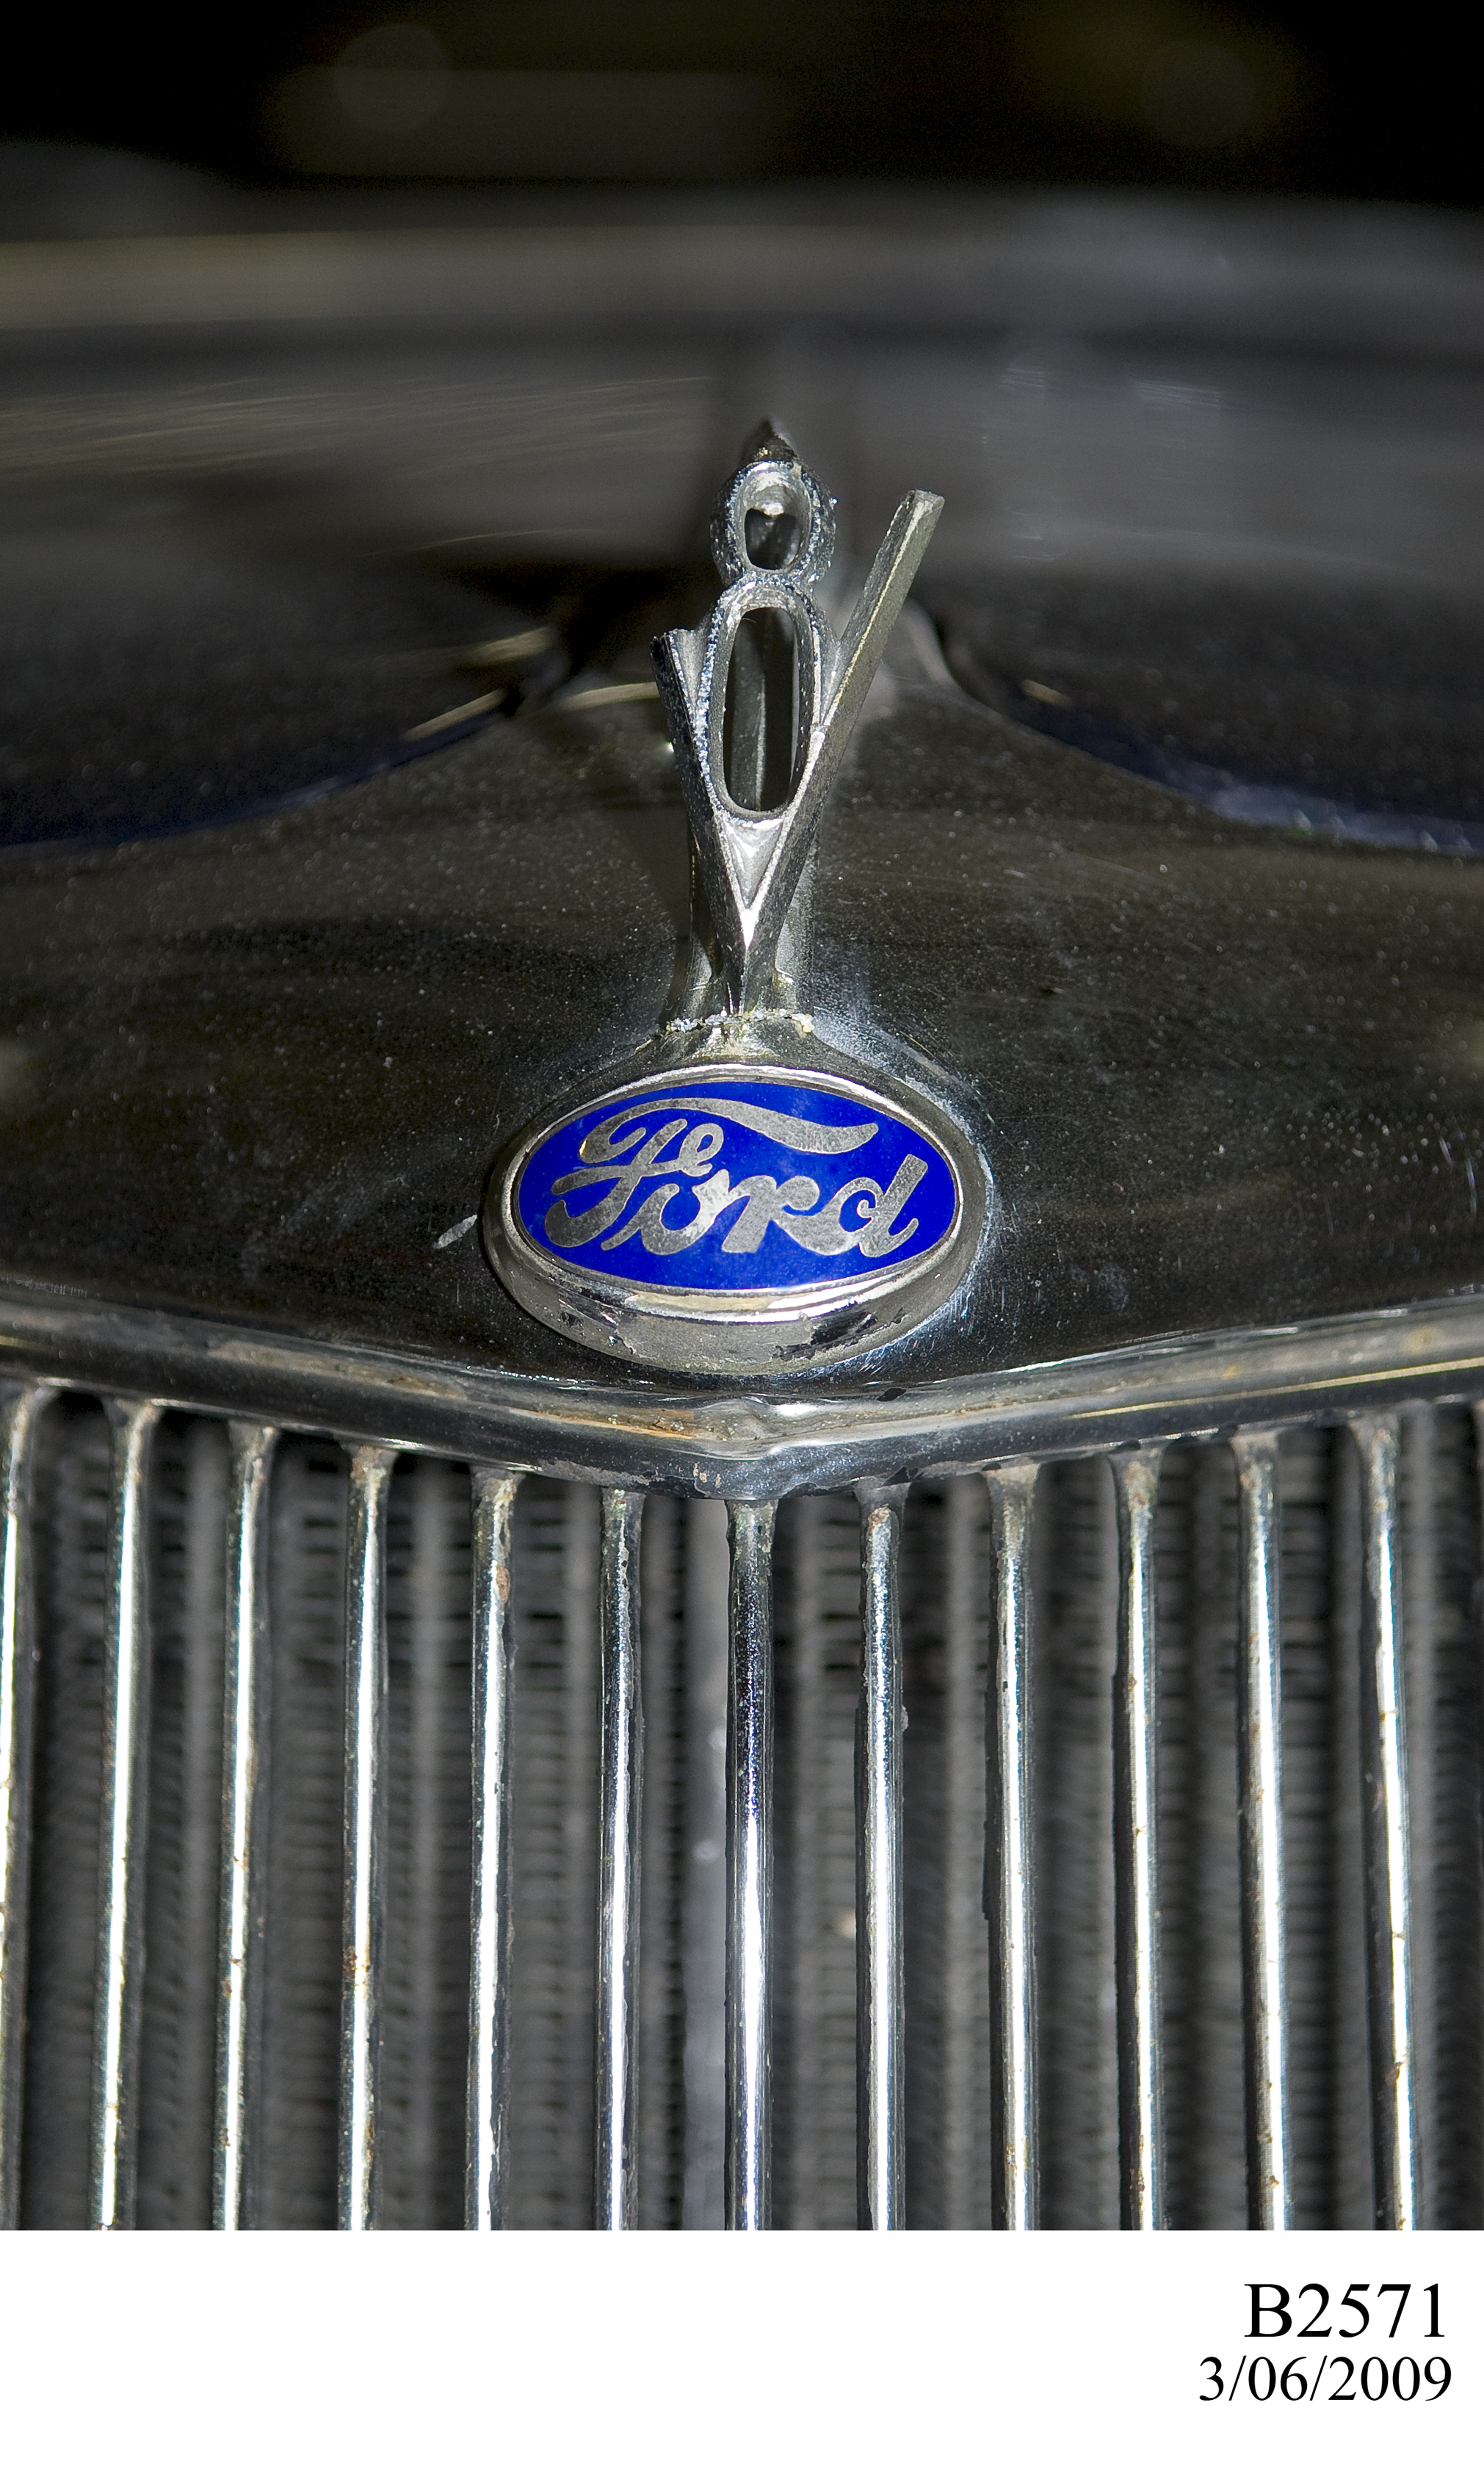 1935 Ford V8 De Luxe model 48 sedan